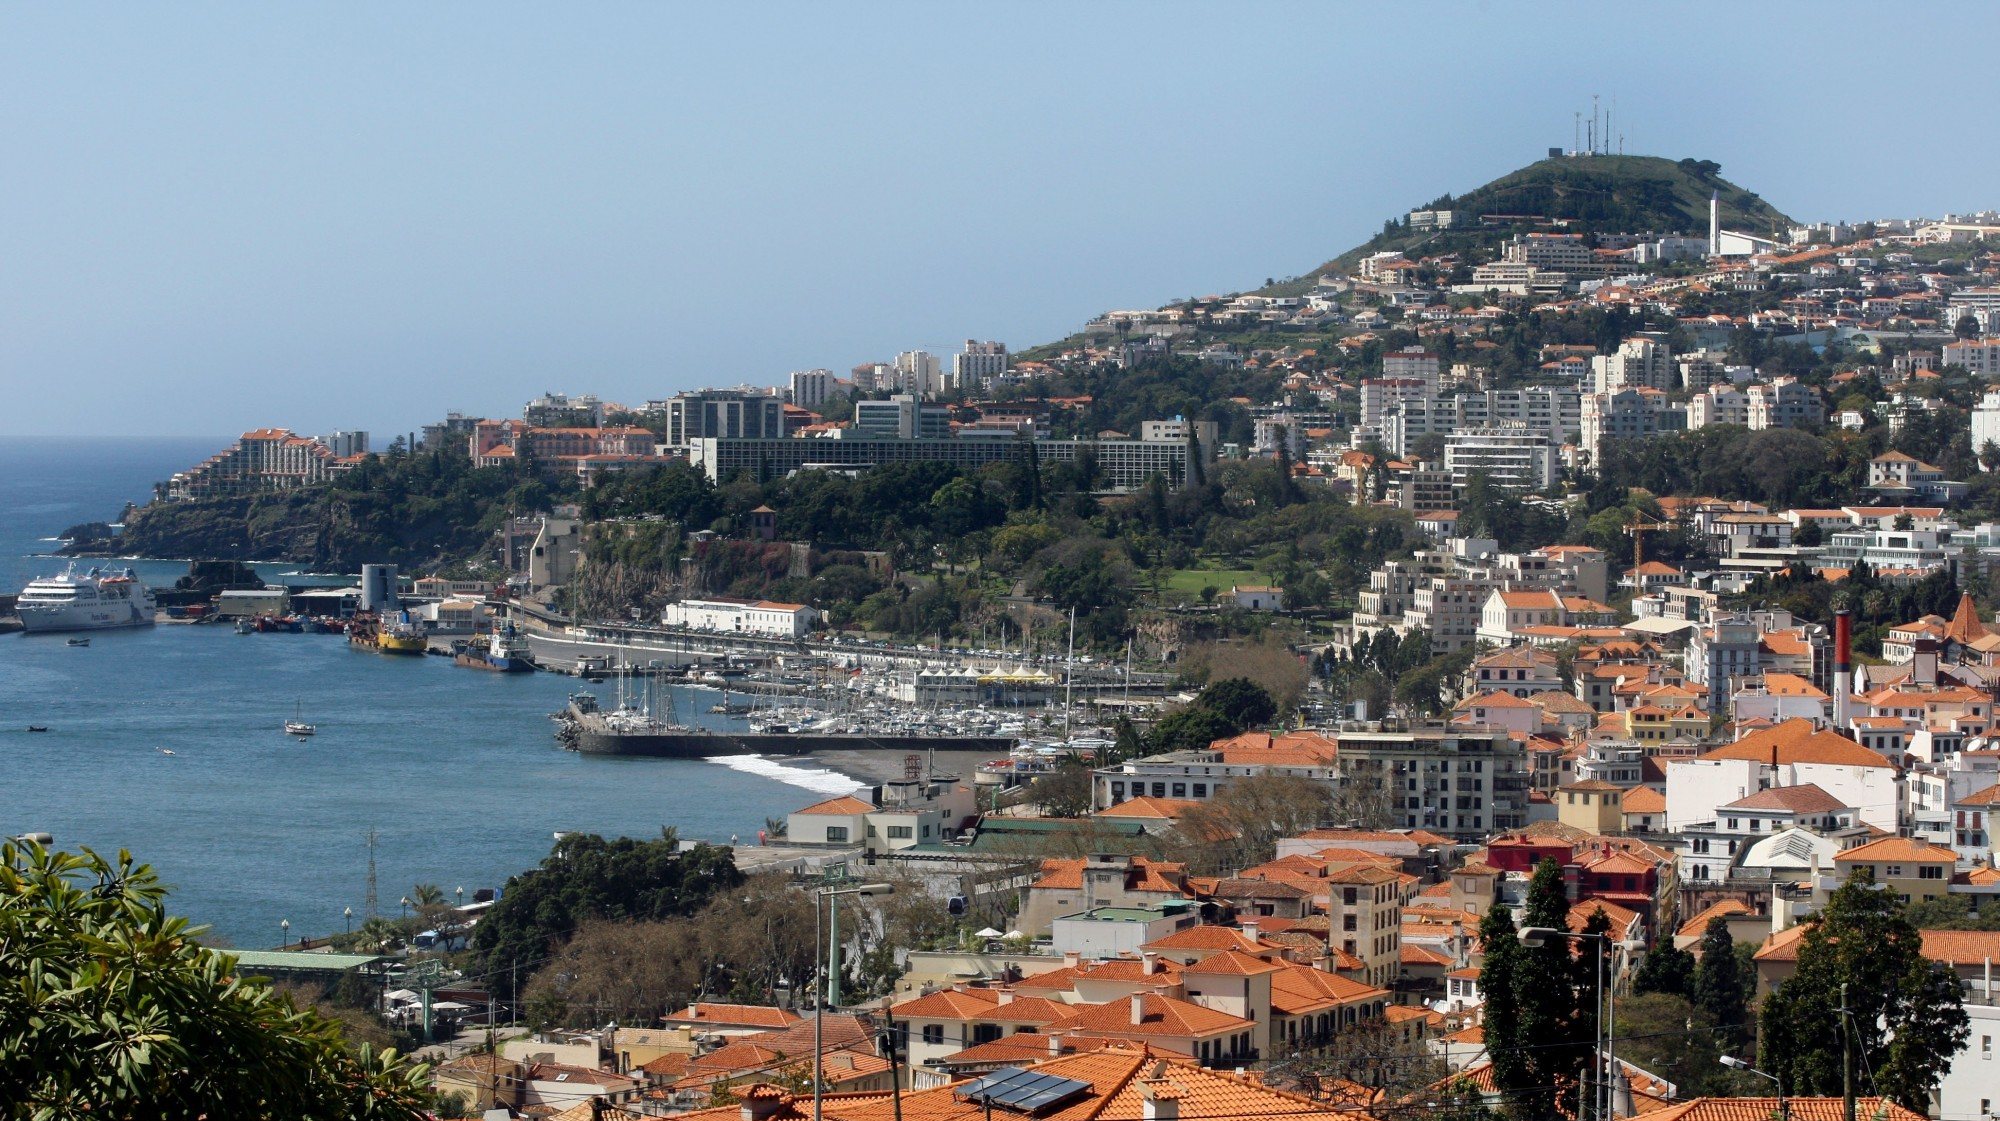 A Associação de Municípios da Região Autónoma da Madeira anunciou que as 11 autarquias do arquipélago passariam a cobrar taxa turística. Atualmente, apenas o município de Santa Cruz cobra esta taxa